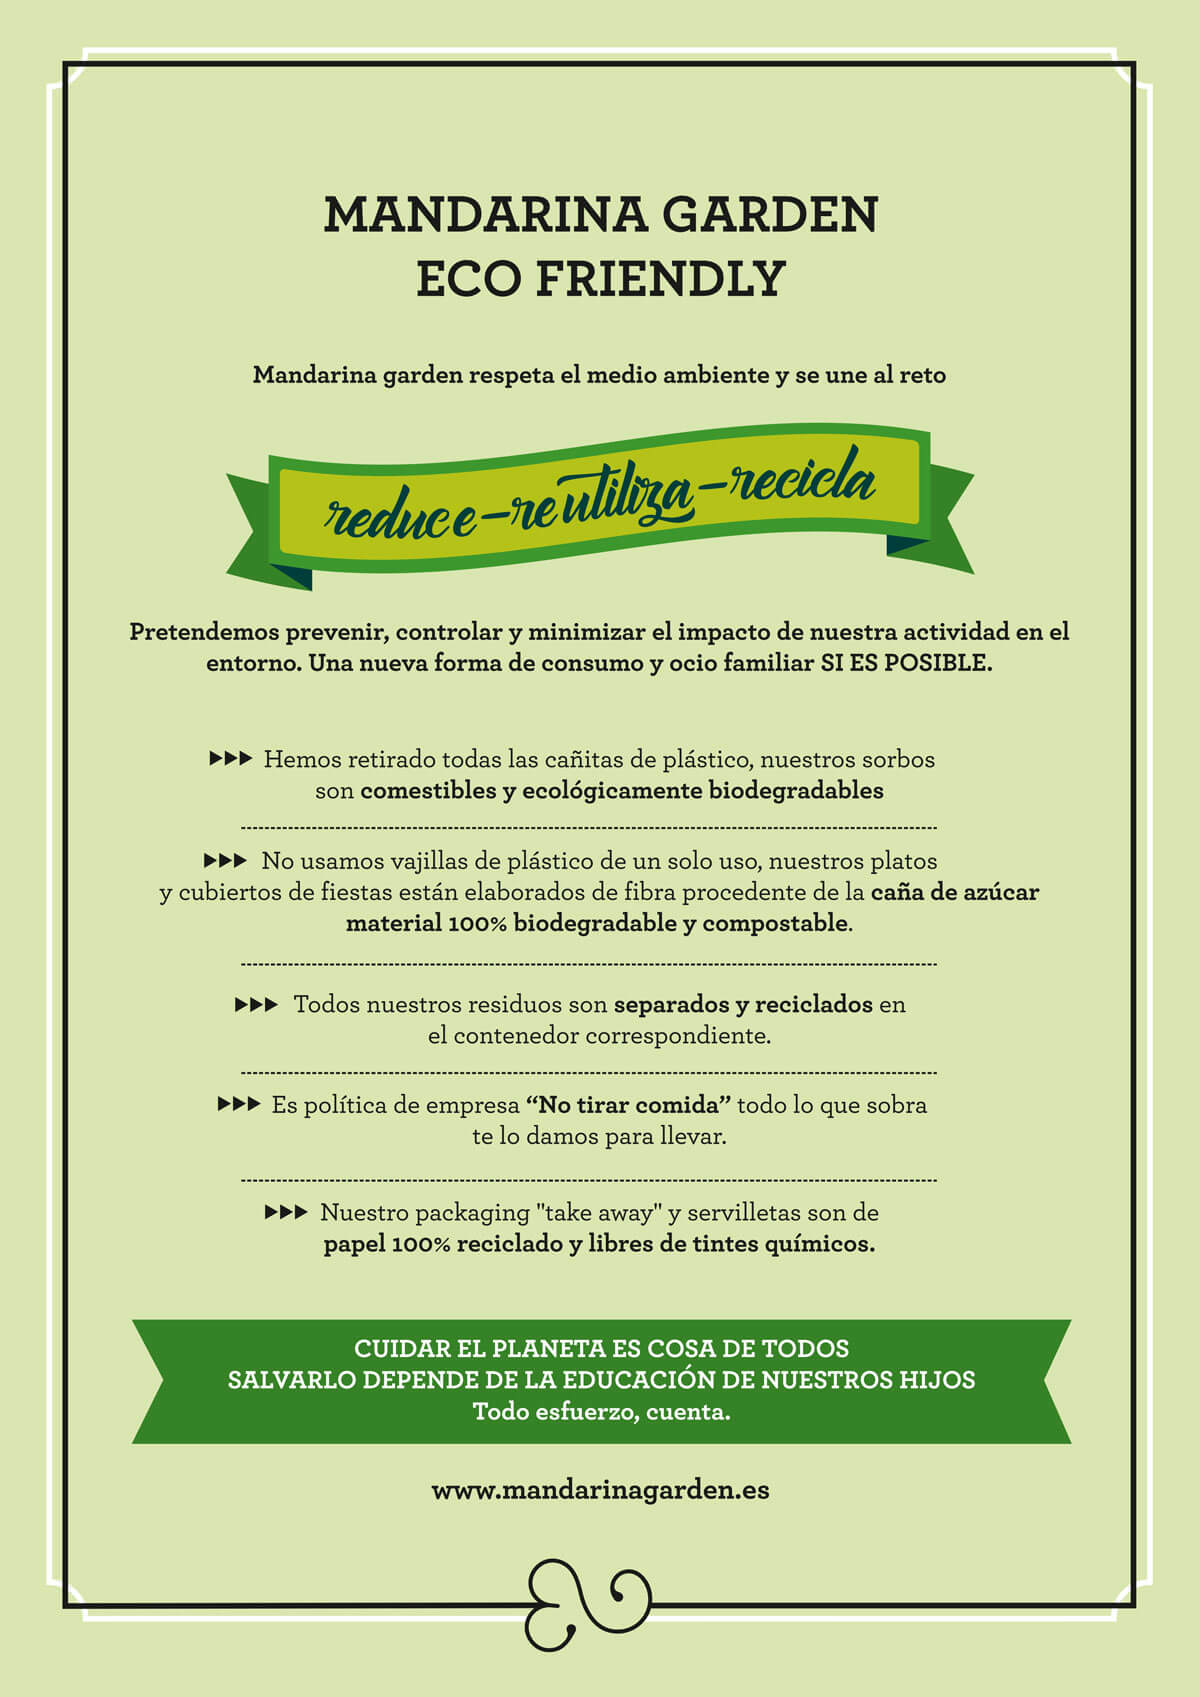 Política de empresa de Mandarina garden para sostenibilidad medioambiental